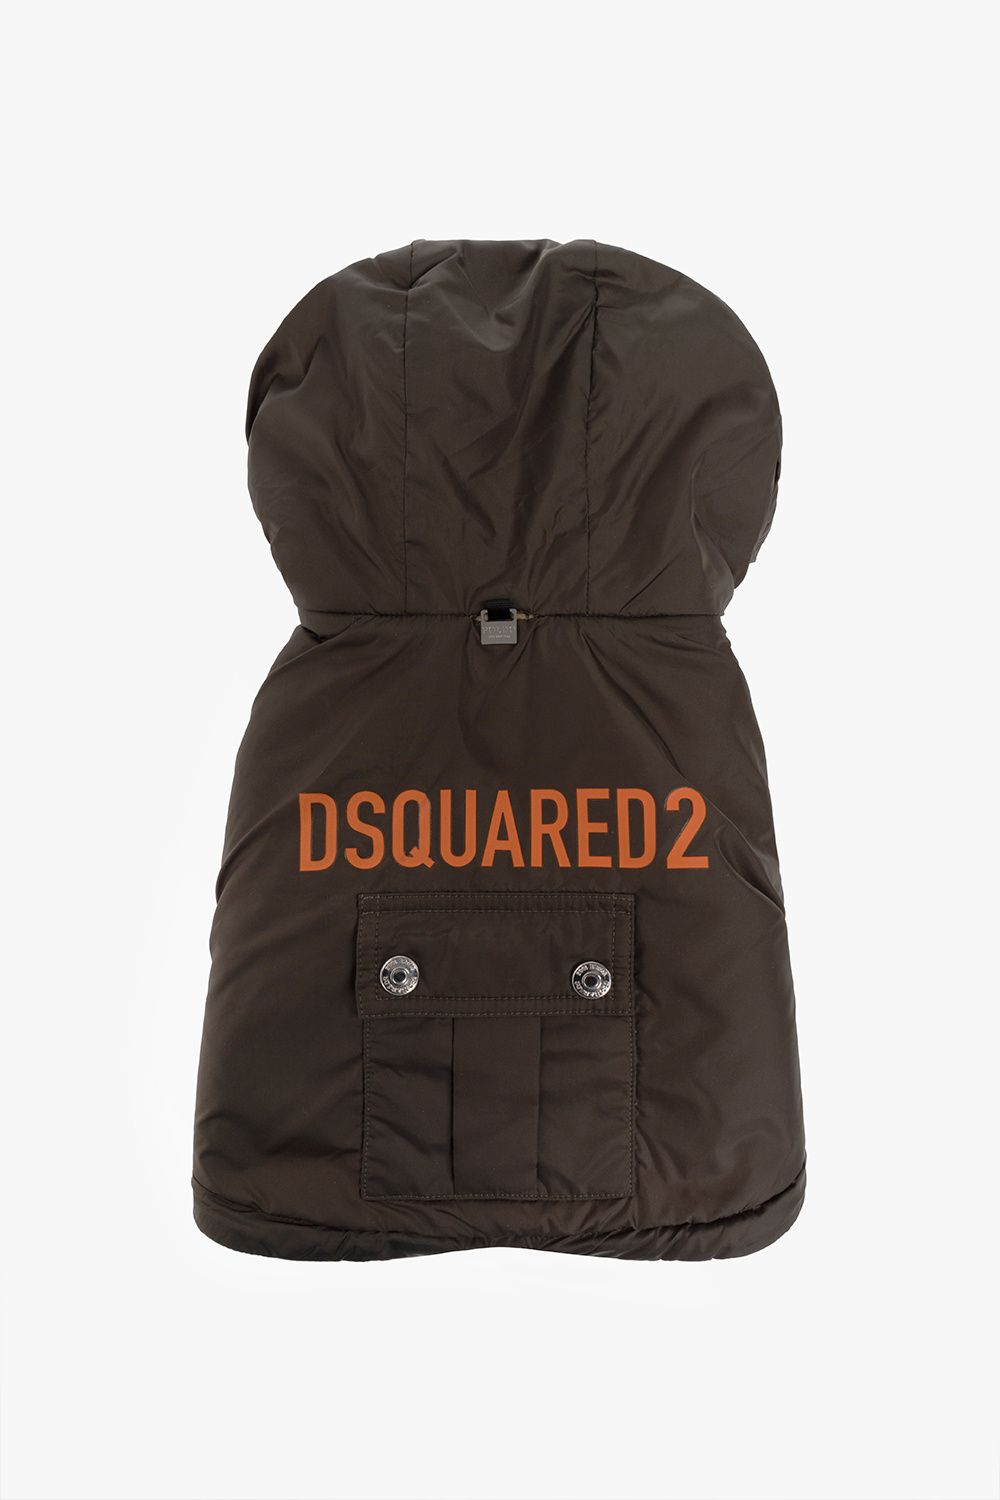 Dsquared2 Dog vest